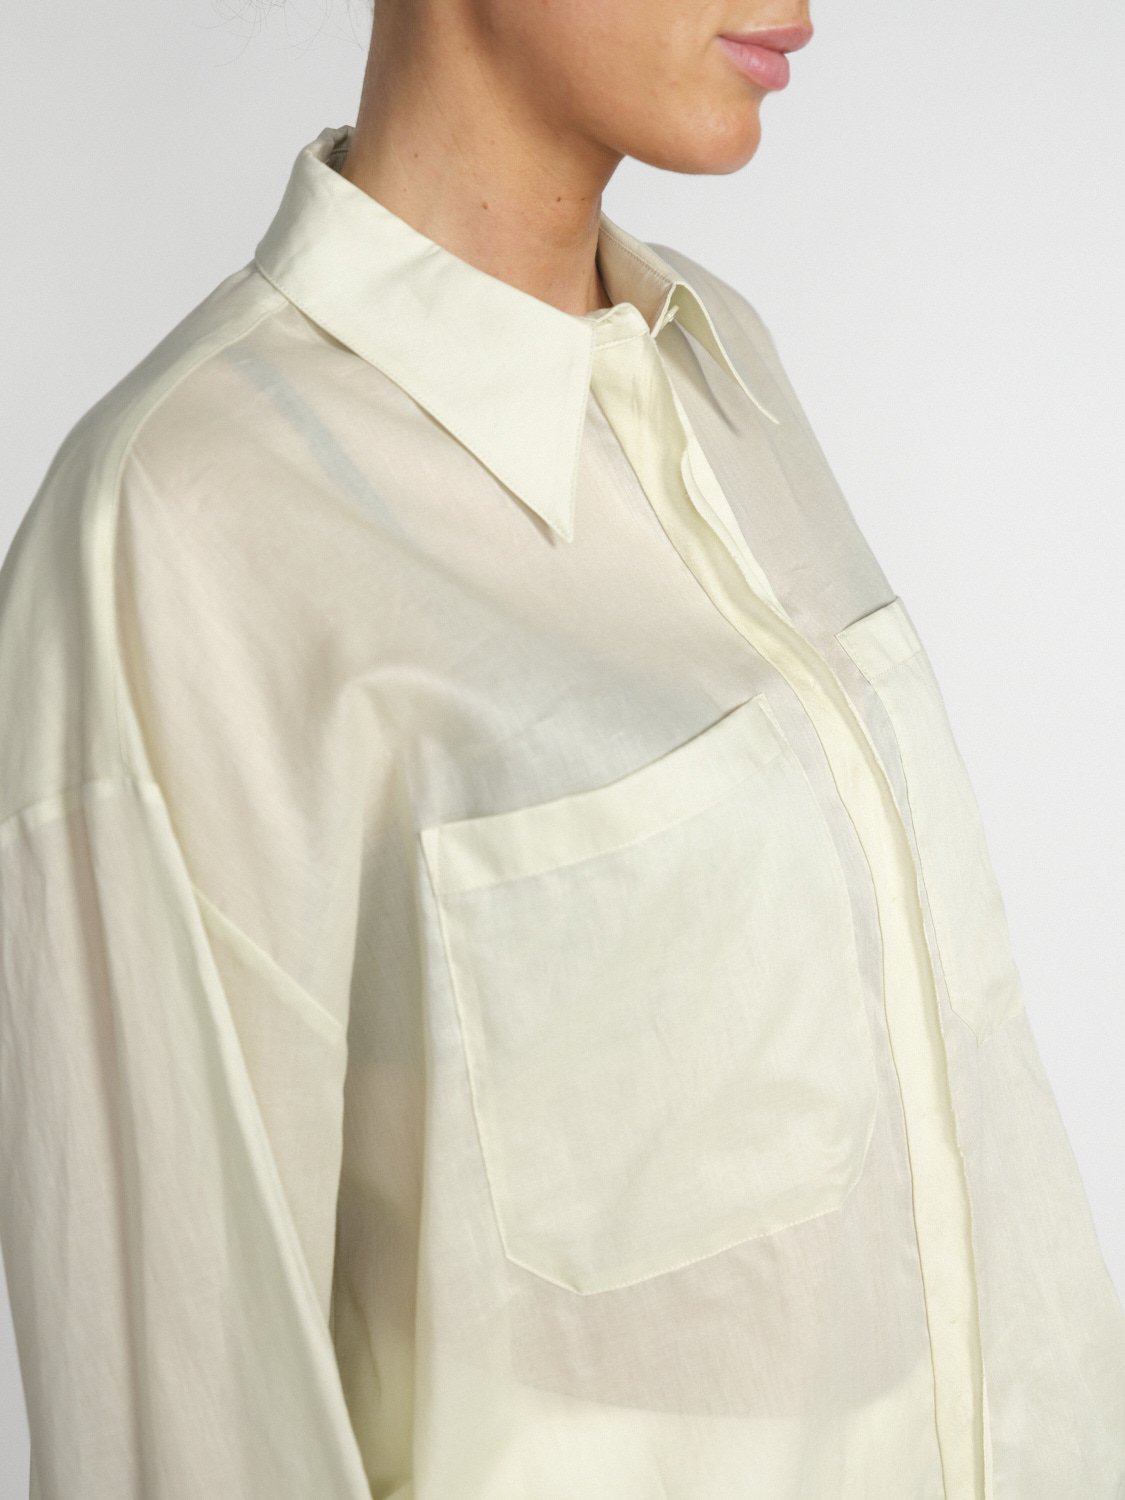 Dorothee Schumacher Fantasy - Leicht transparente Bluse aus Baumwolle 	  -blanco S